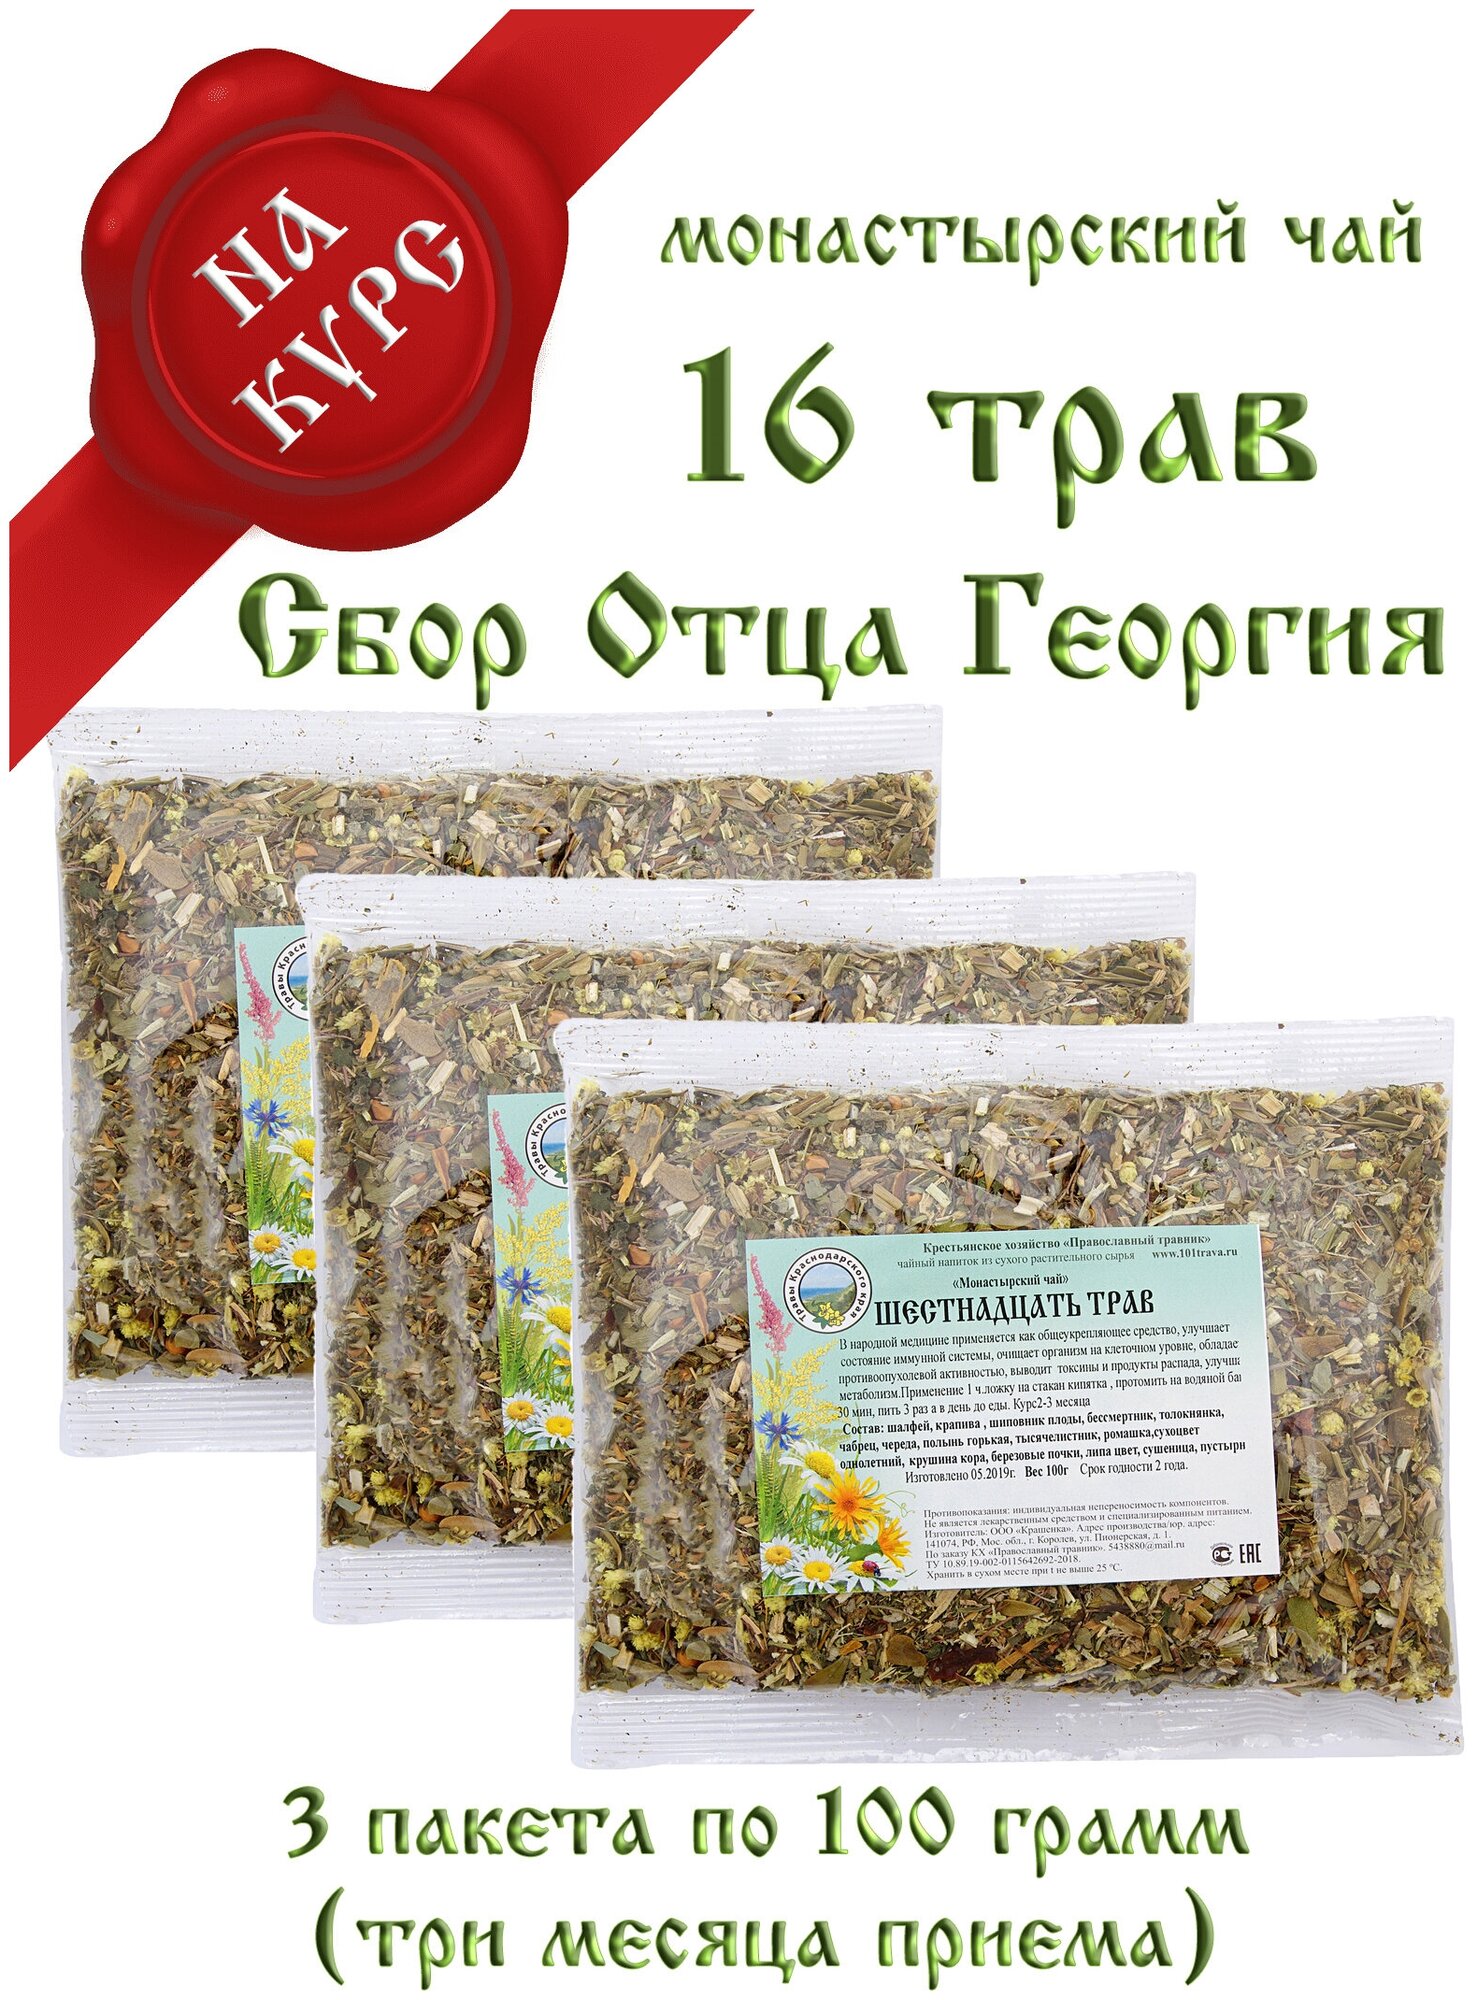 Монастырский чай травяной сбор Шестнадцать трав (общеукрепляющий) 3 пакета по 100 гр. КХ Православный травник (натуральный травяной чай)